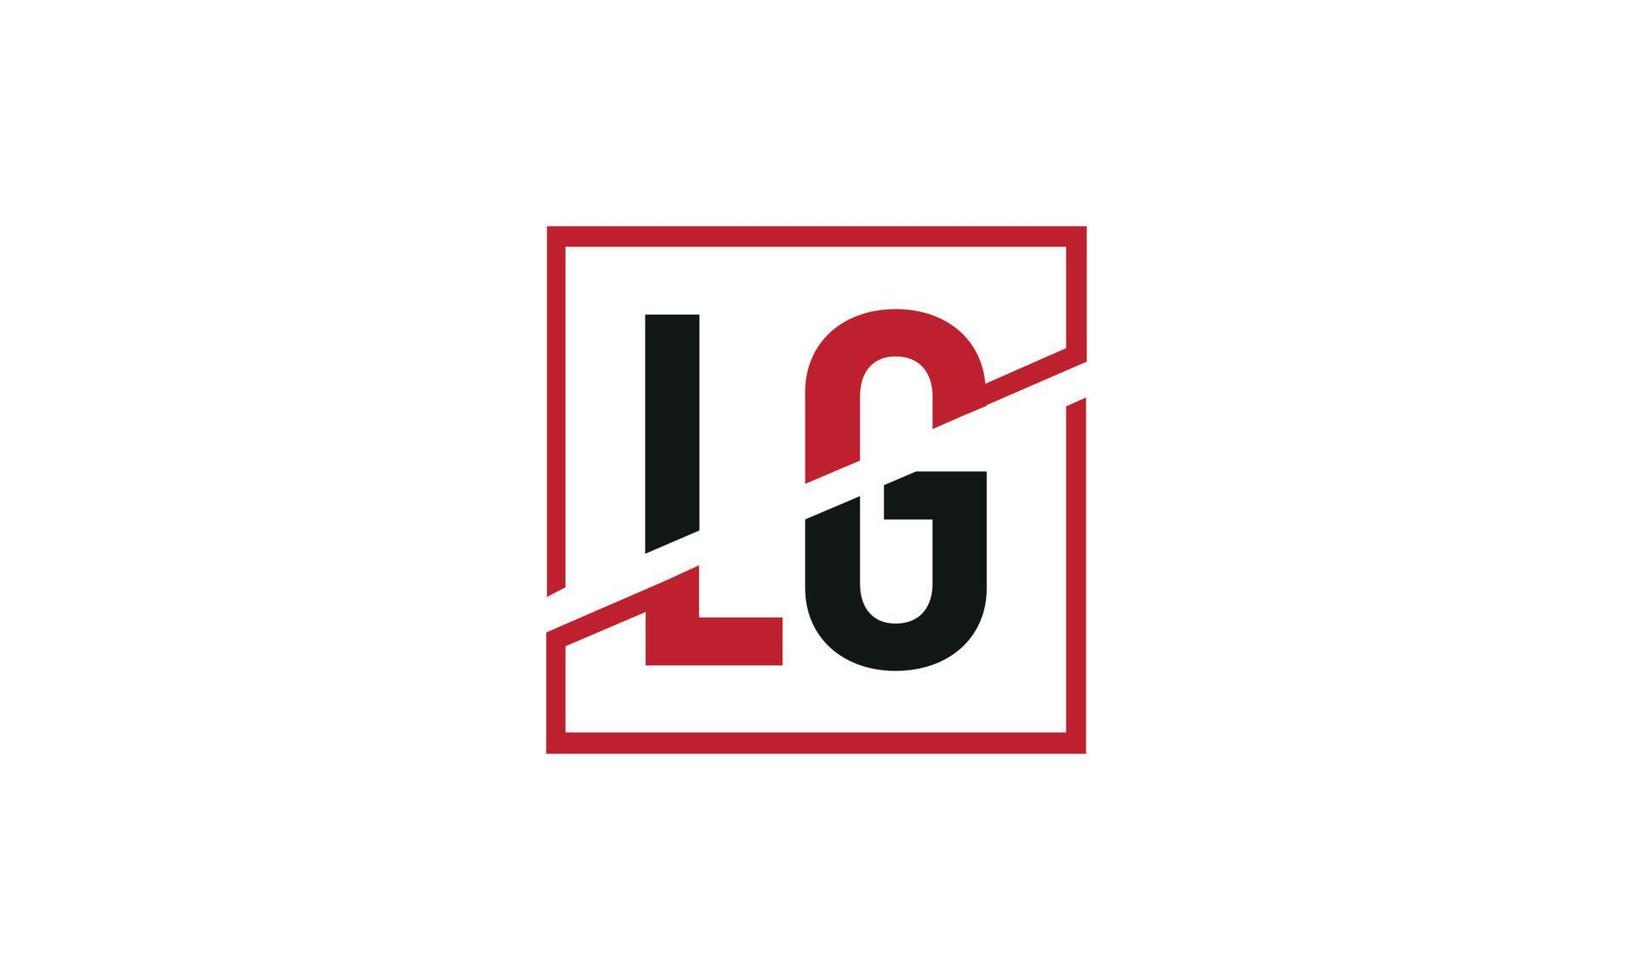 Buchstabe lg Logo pro Vektordatei pro Vektor